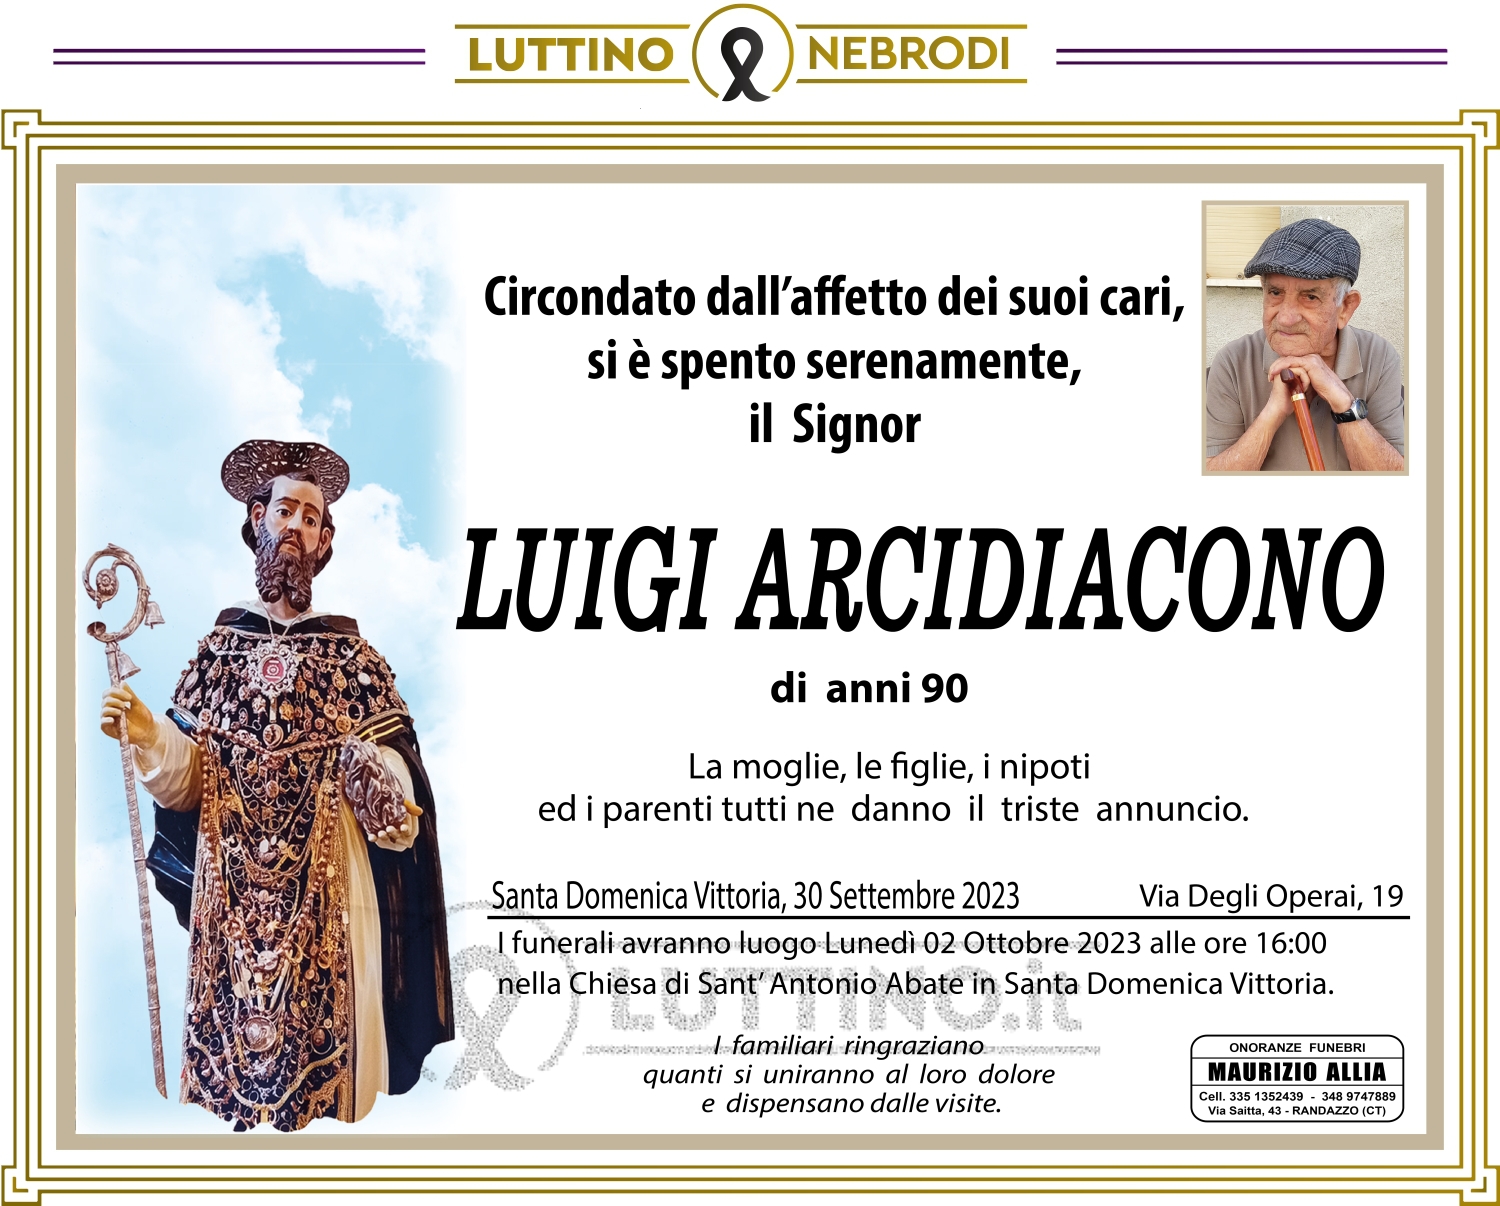 Luigi Arcidiacono